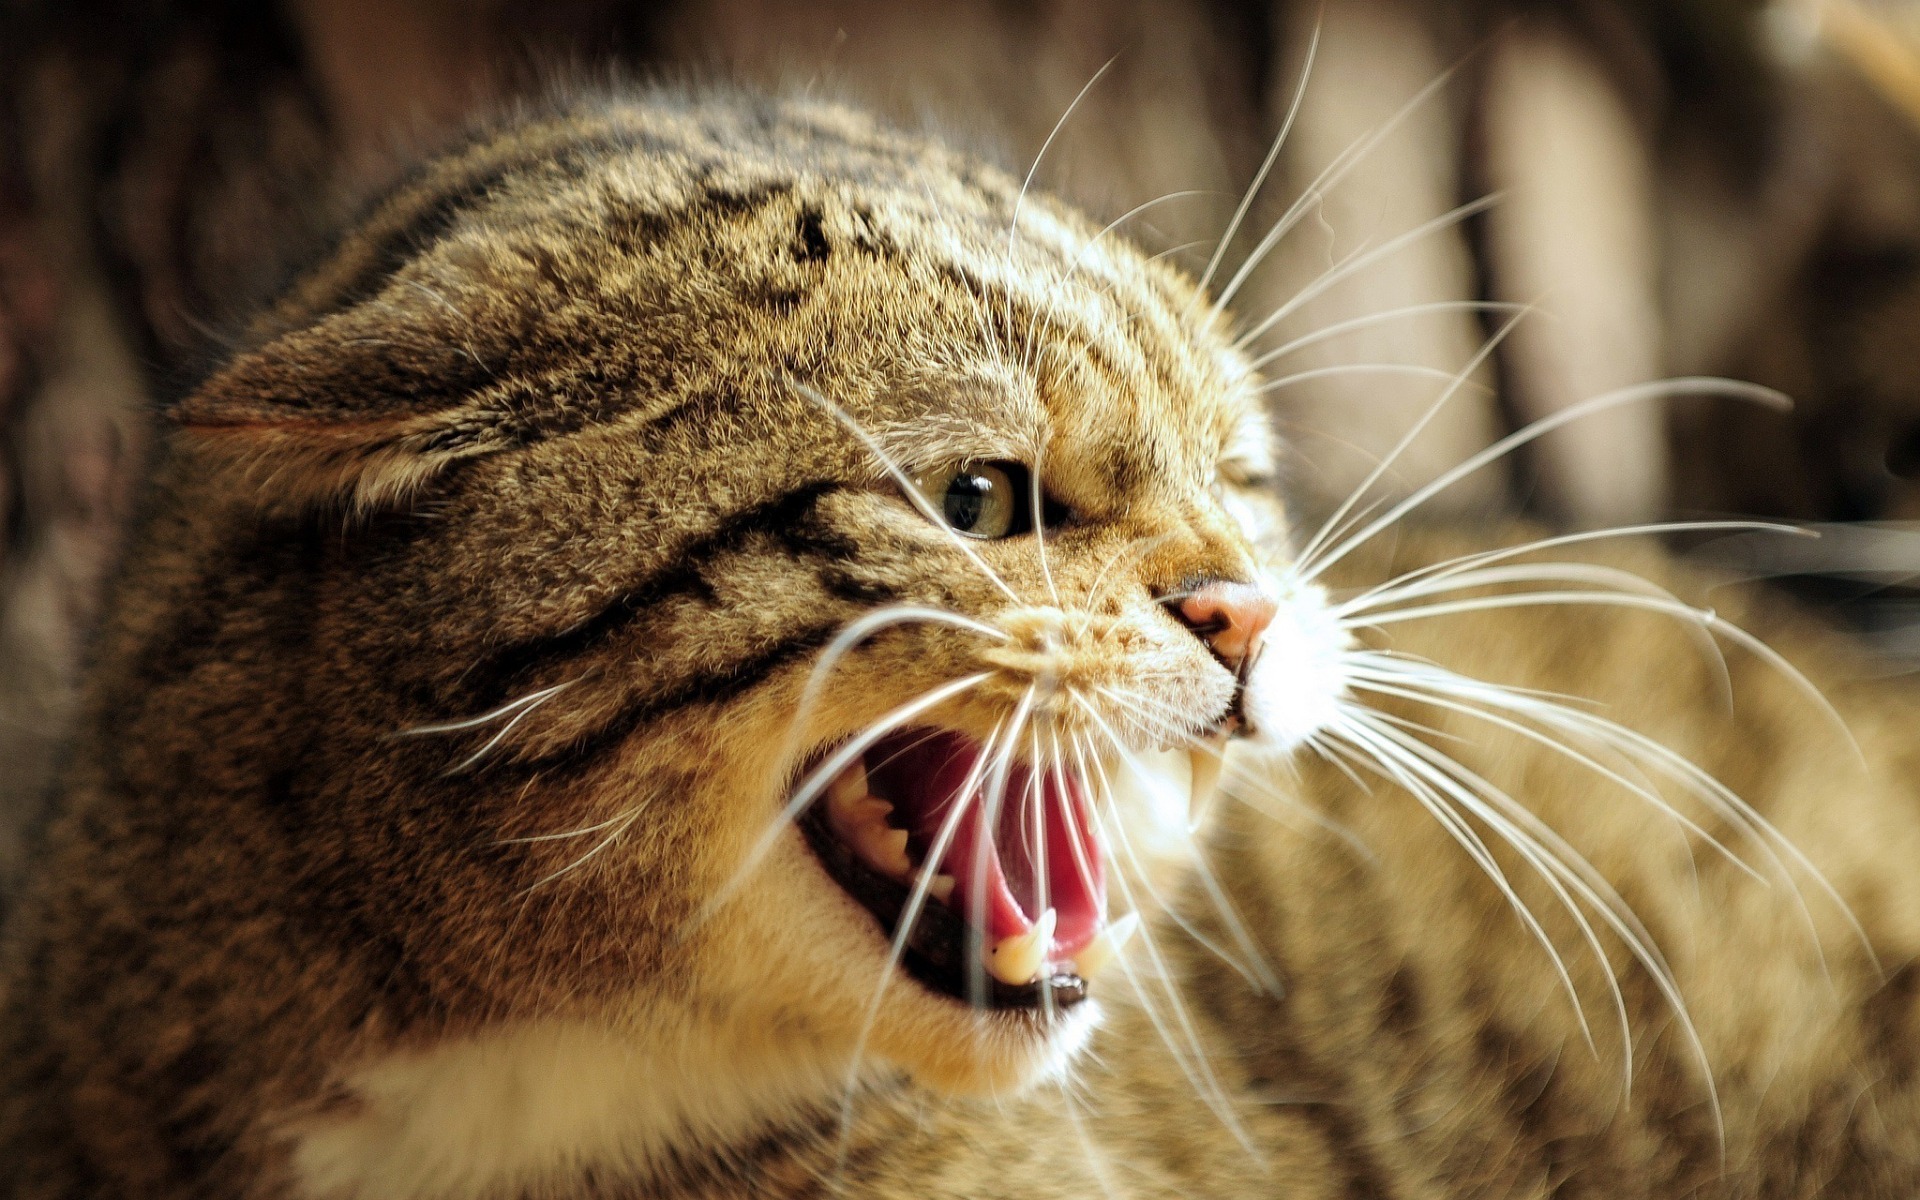 Kočičí zuby bývají použity jako poslední možnost obrany. Reakce na uklidňující signály od koček a dodržování řeči jejich těla pomůže předcházet nepříjemným situacím.